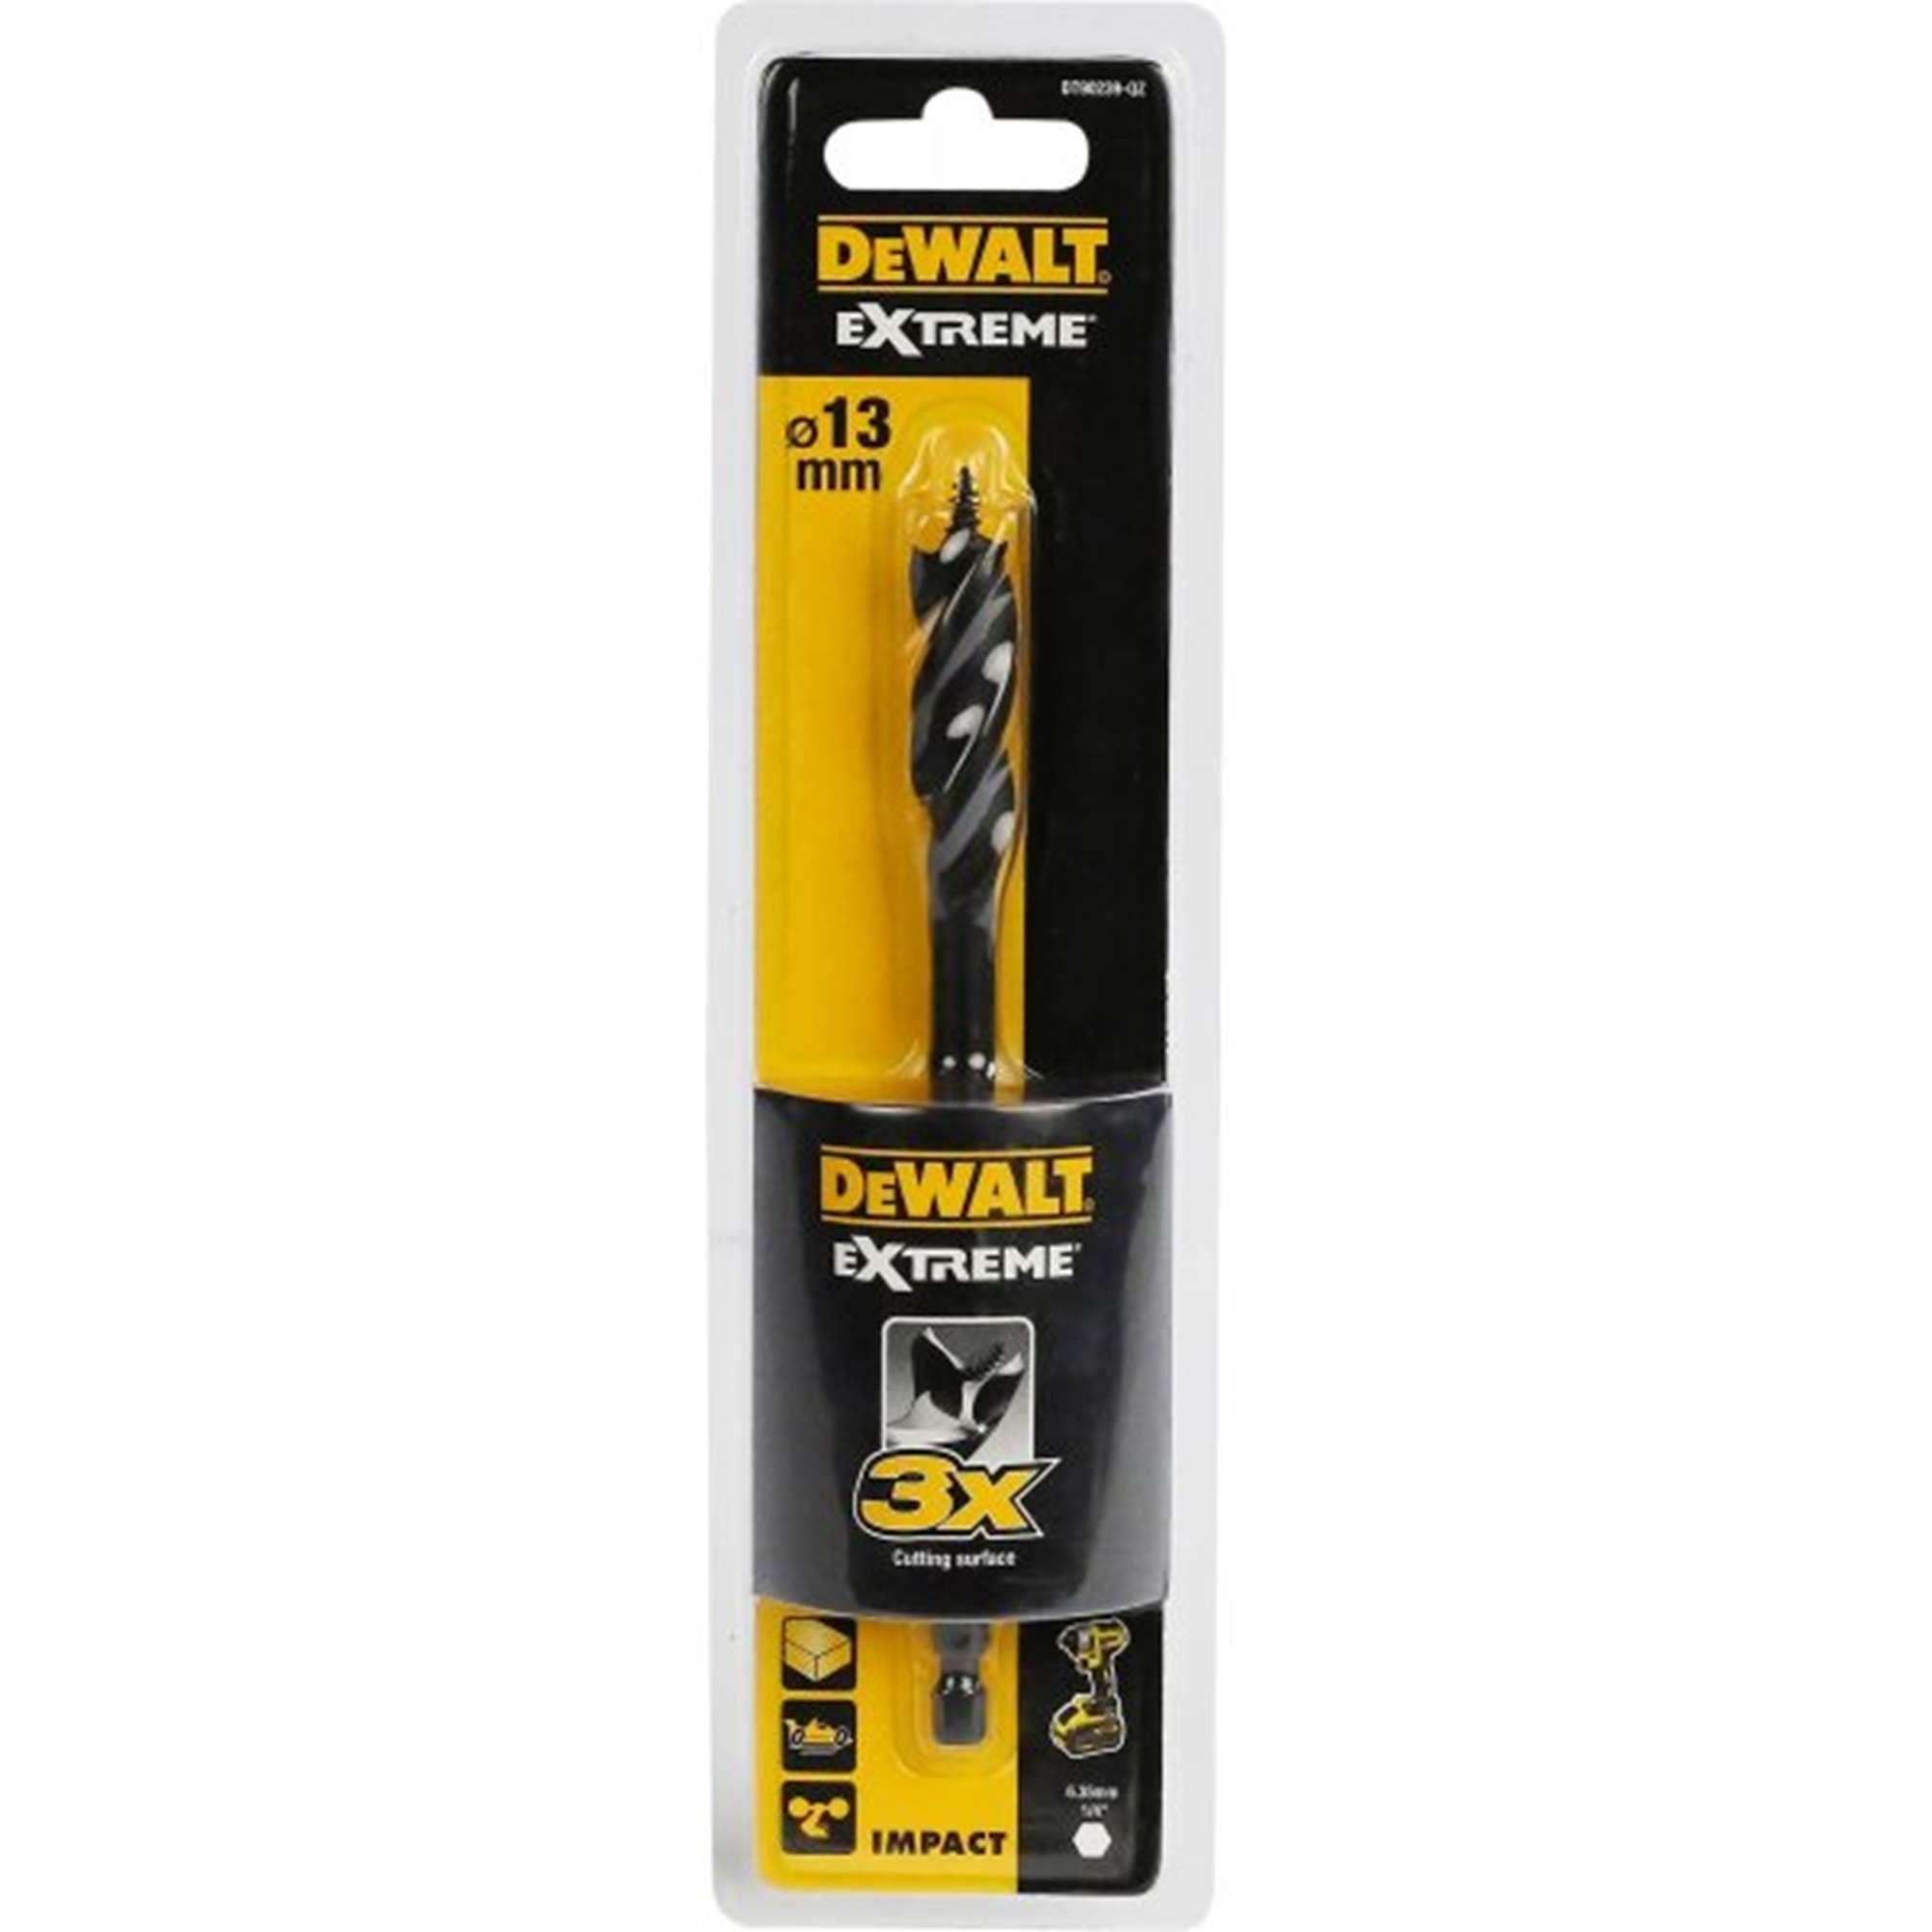 DEWALT DT90239-QZ Wood drill bit